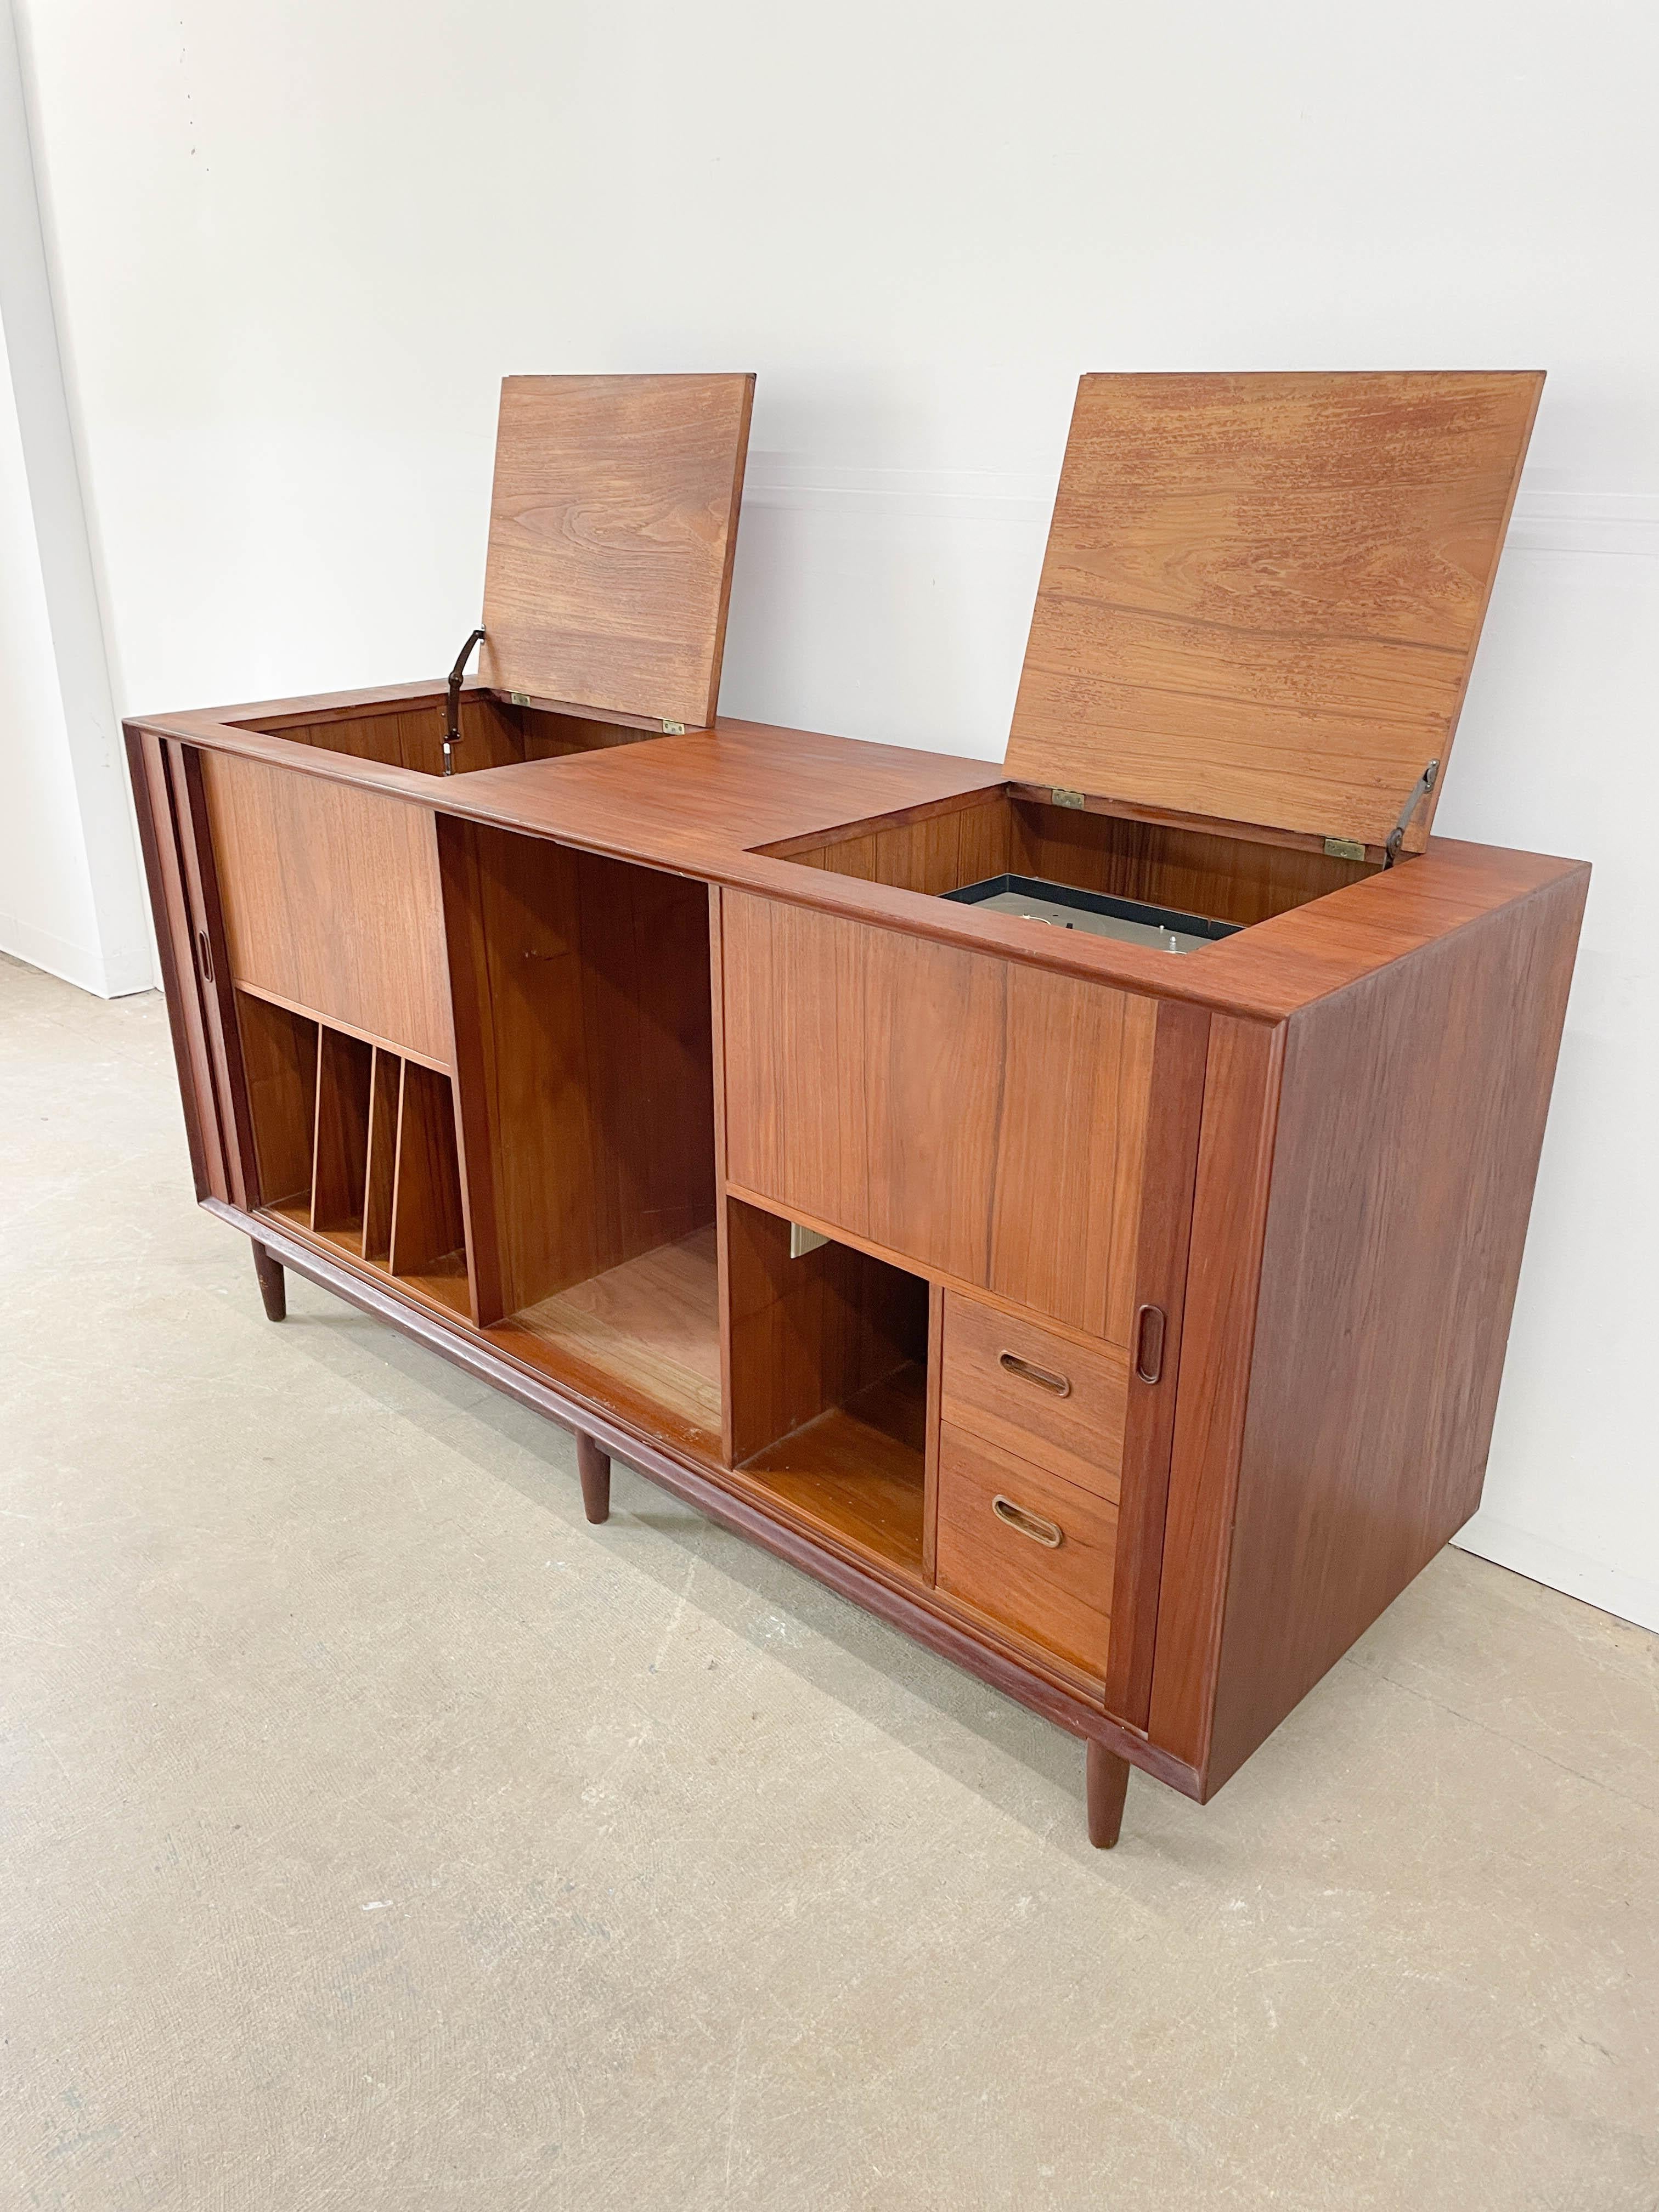 Un rare et imposant meuble hi-fi des années 1950 du célèbre designer danois Arne Vodder. Fabriqué par Sibast Furniture, ce meuble au design astucieux permet de ranger des composants hi-fi et des disques dans un seul et même meuble très esthétique.